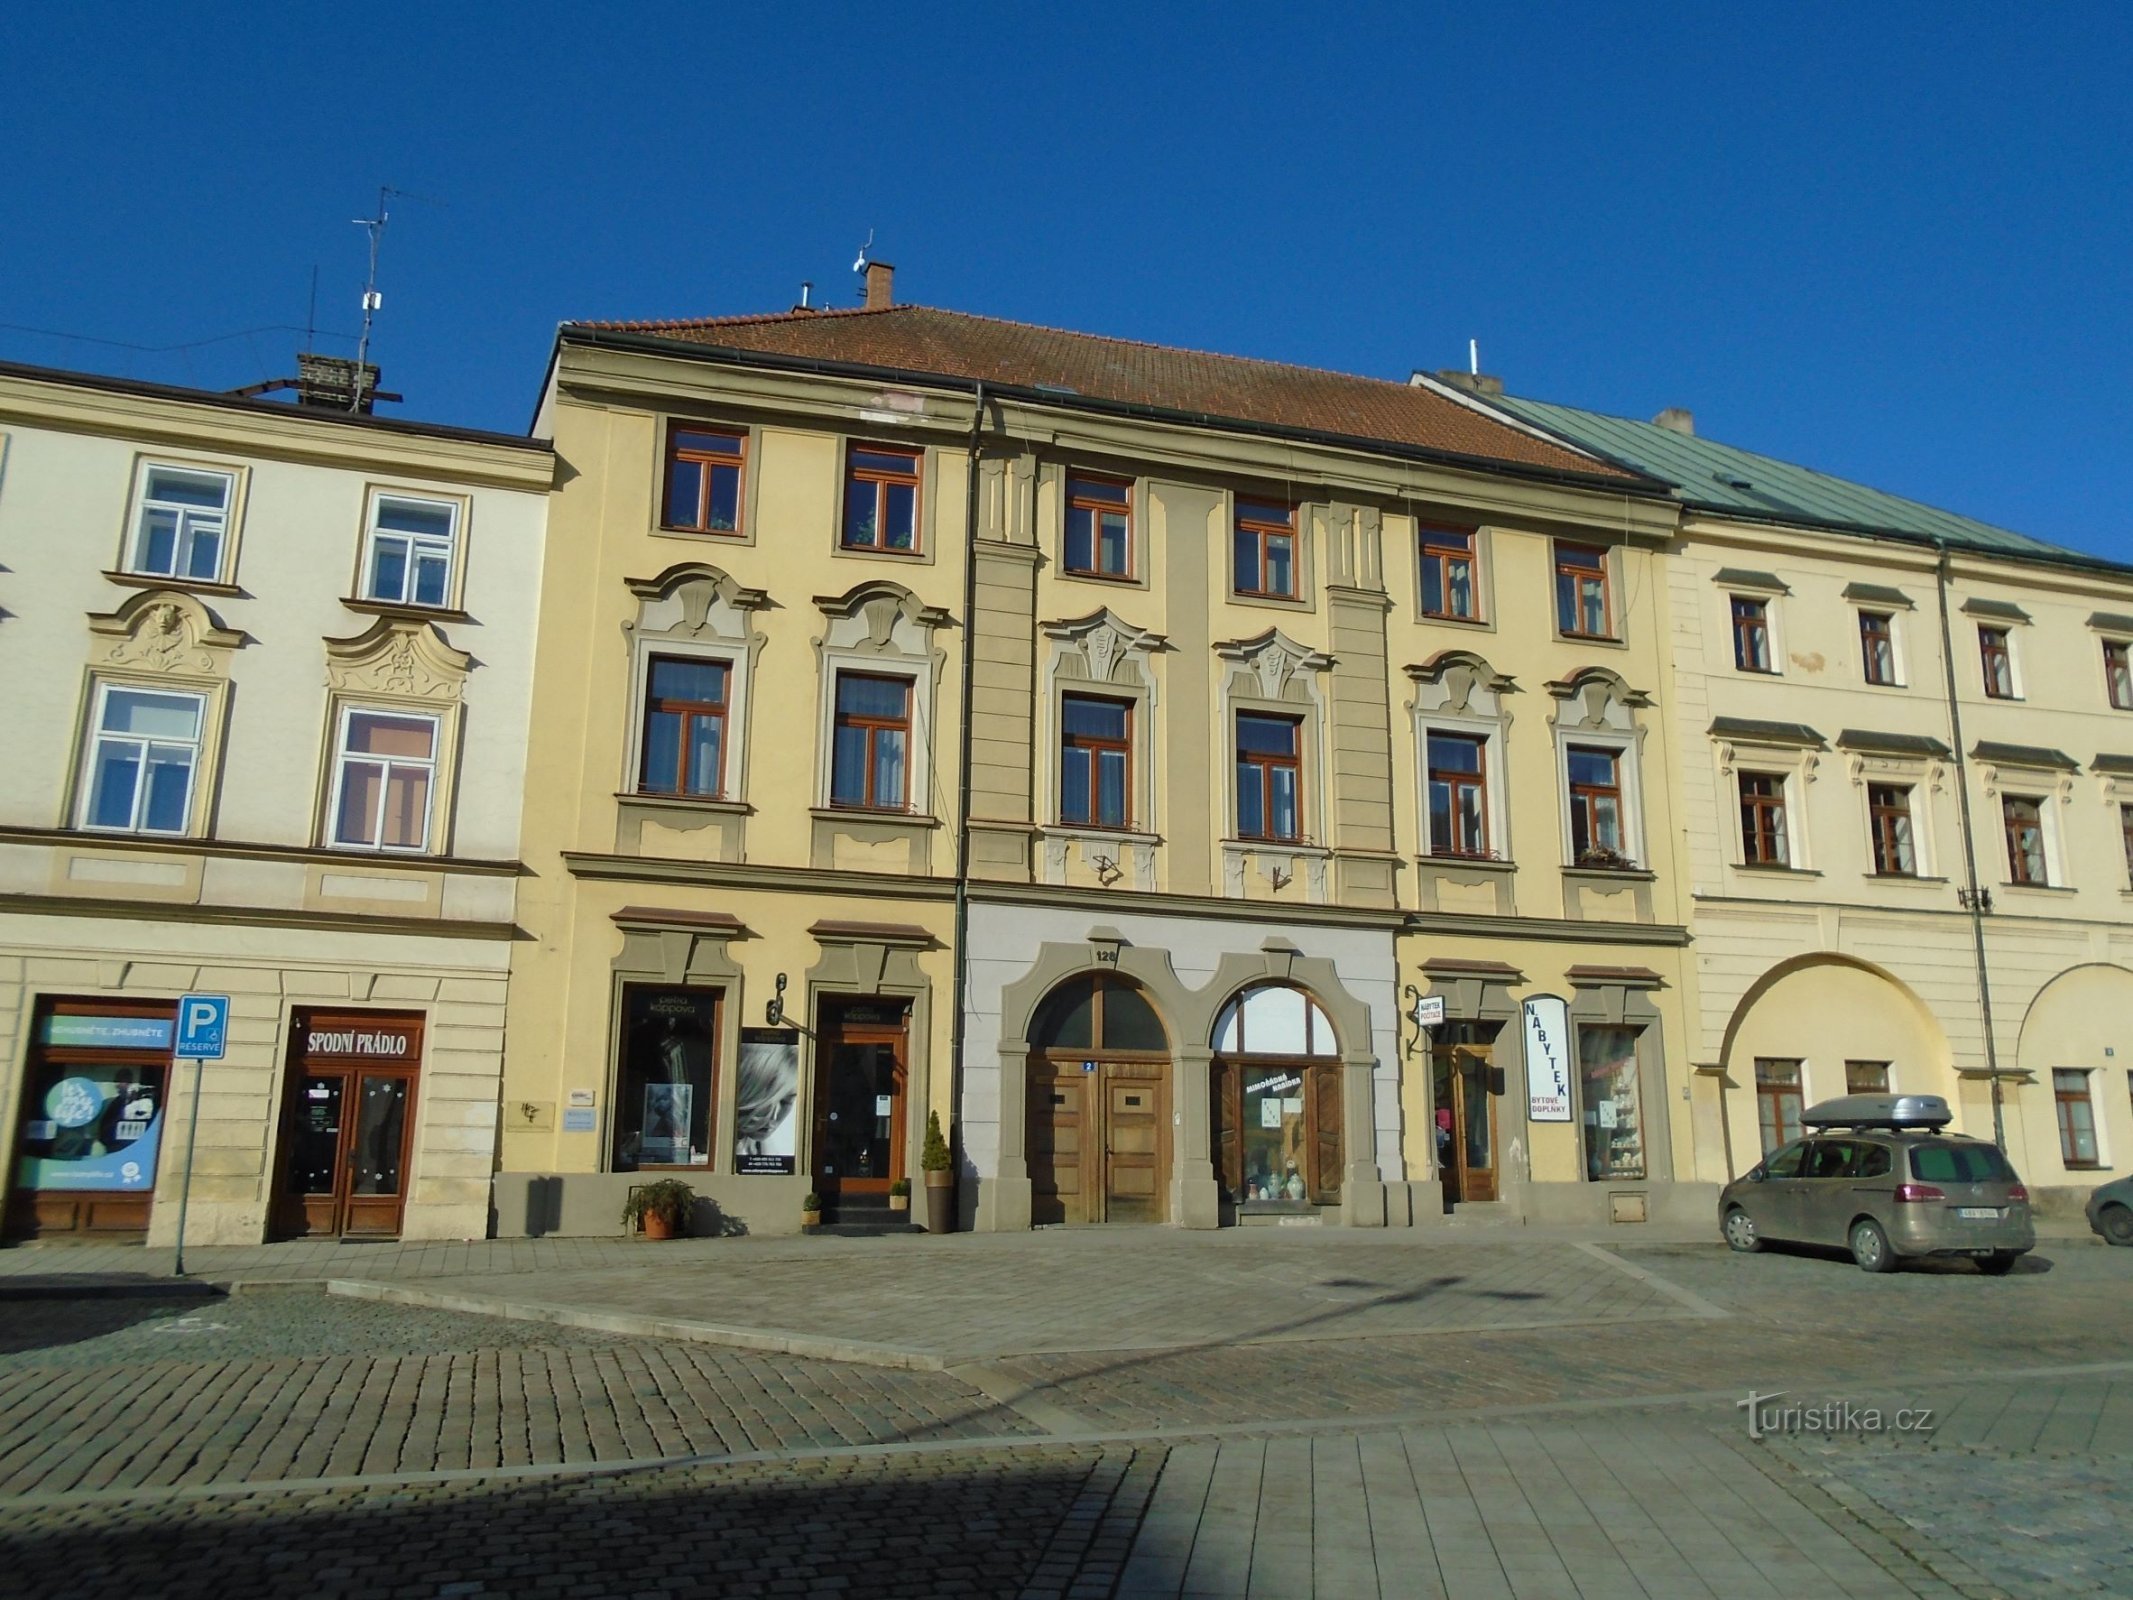 Malé náměstí nr. 128 (Hradec Králové, 25.2.2018 april XNUMX)